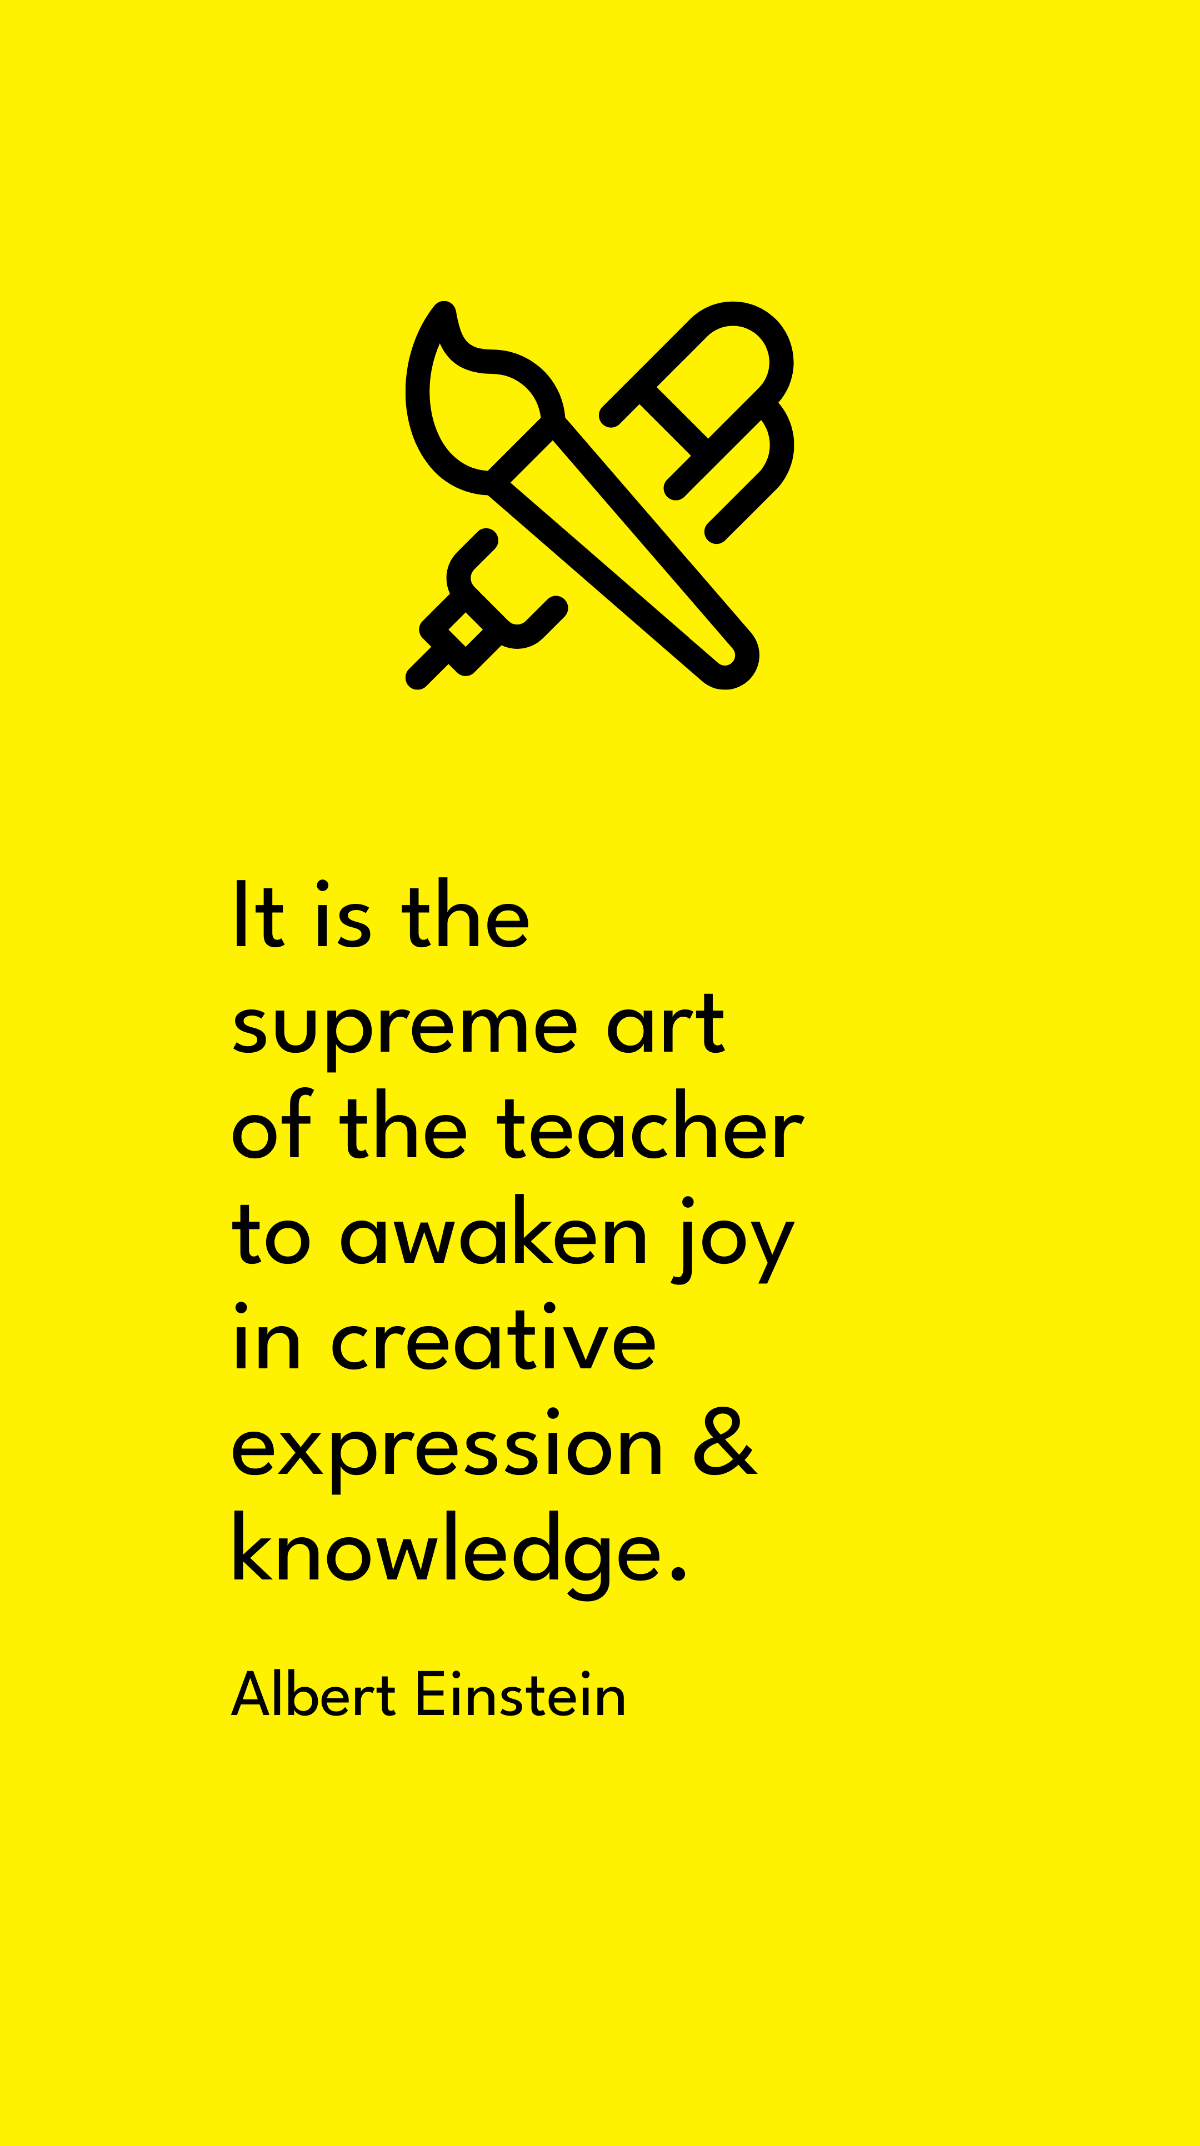 Albert Einstein - It is the supreme art of the teacher to awaken joy in creative expression & knowledge.